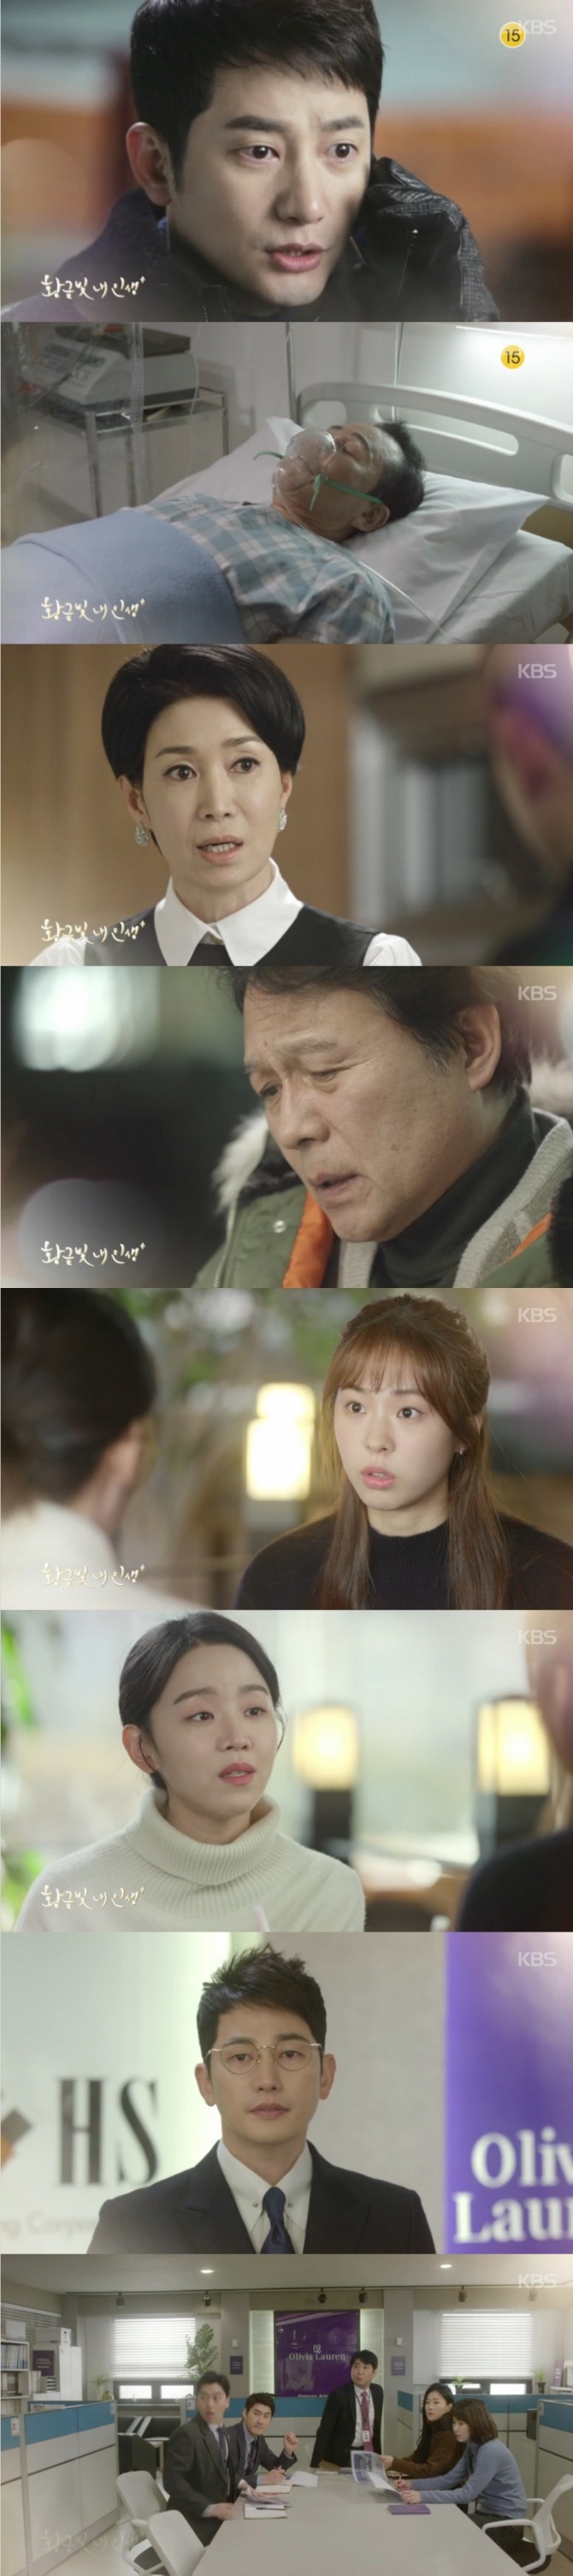 17일 저녁 10시에 방송되는 KBS2 주말드라마 '황금빛 내인생' 46회에서는 최도경(박시후)이 노회장(김병기)이 쓰러진 후 그룹으로 복귀하는 반전이 그려진다. 사진=KBS 영상 캡처